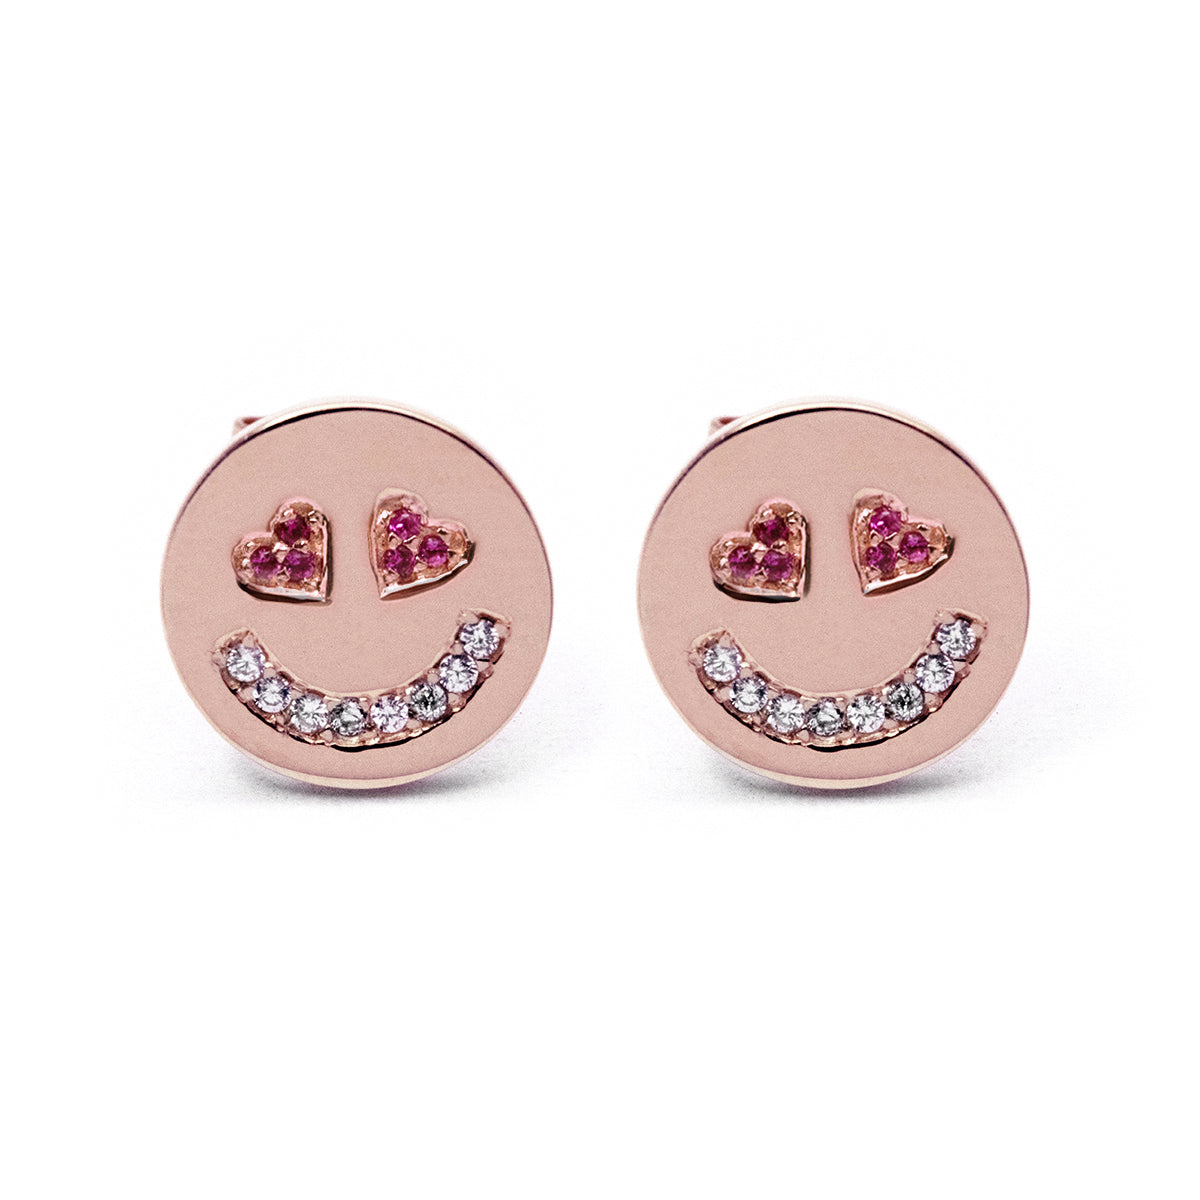 In Love Face Earrings (Pink)